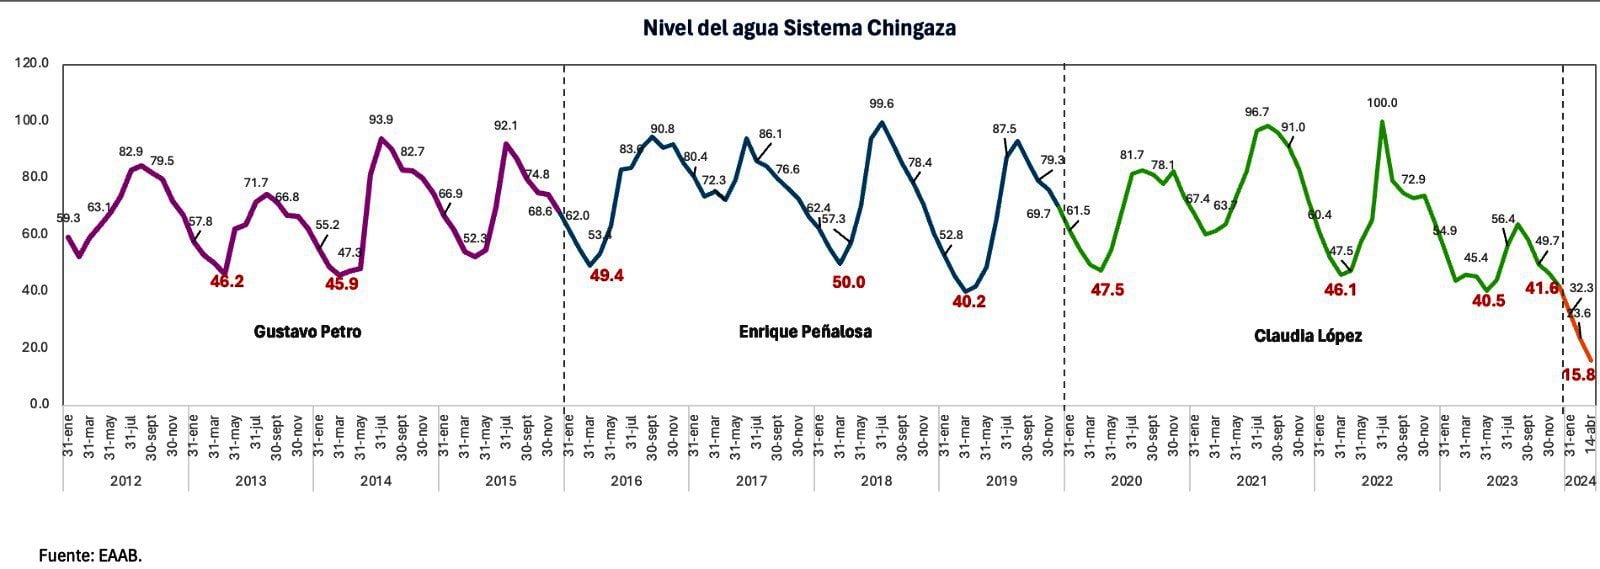 La exalcaldesa compartió unas estadísticas con datos del Acueducto de Bogotá que evidencian el nivel de los embalses del sistema Chingaza desde 2012 hasta 2024 - crédito @ClaudiaLopez/x